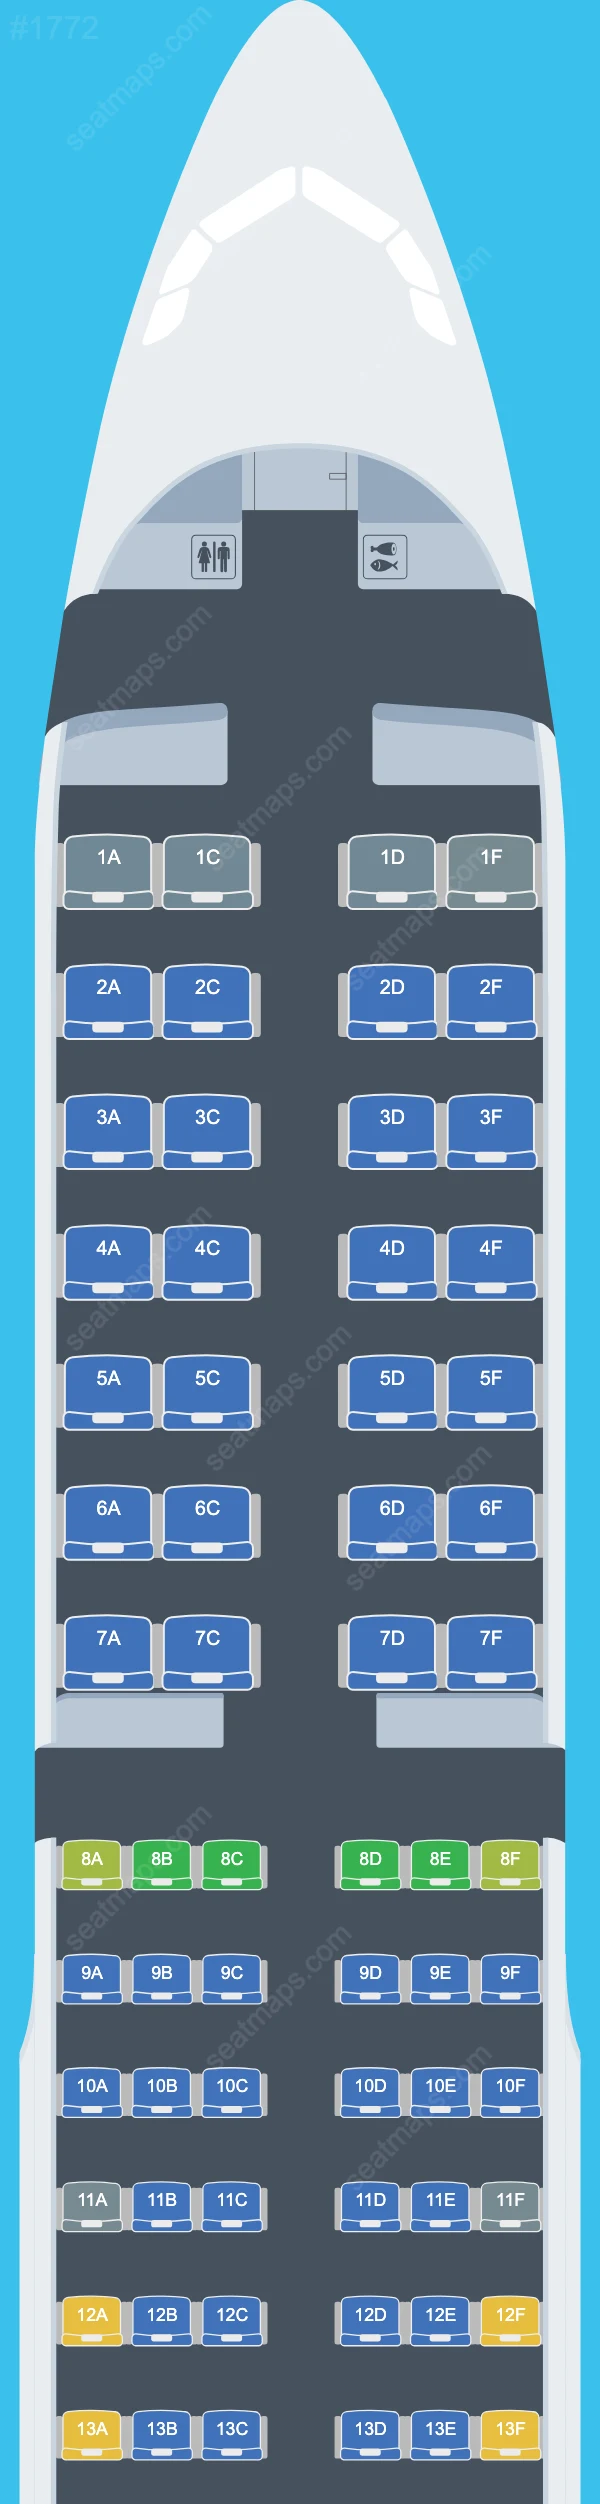 Aeroflot Airbus A321 Seat Maps A321-200 V.2